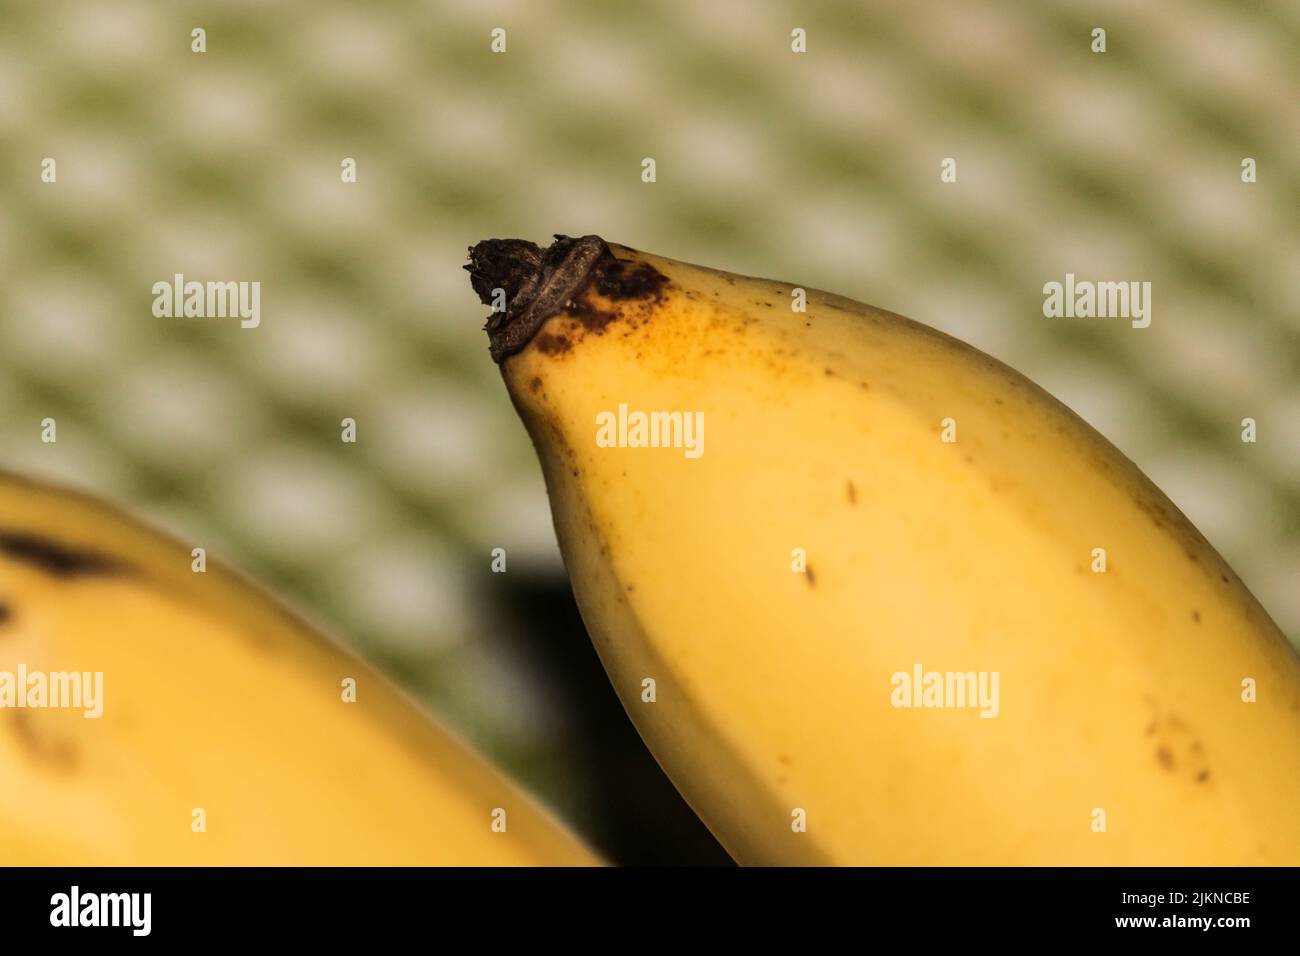 Ripened Banana on a Table Stock Photo